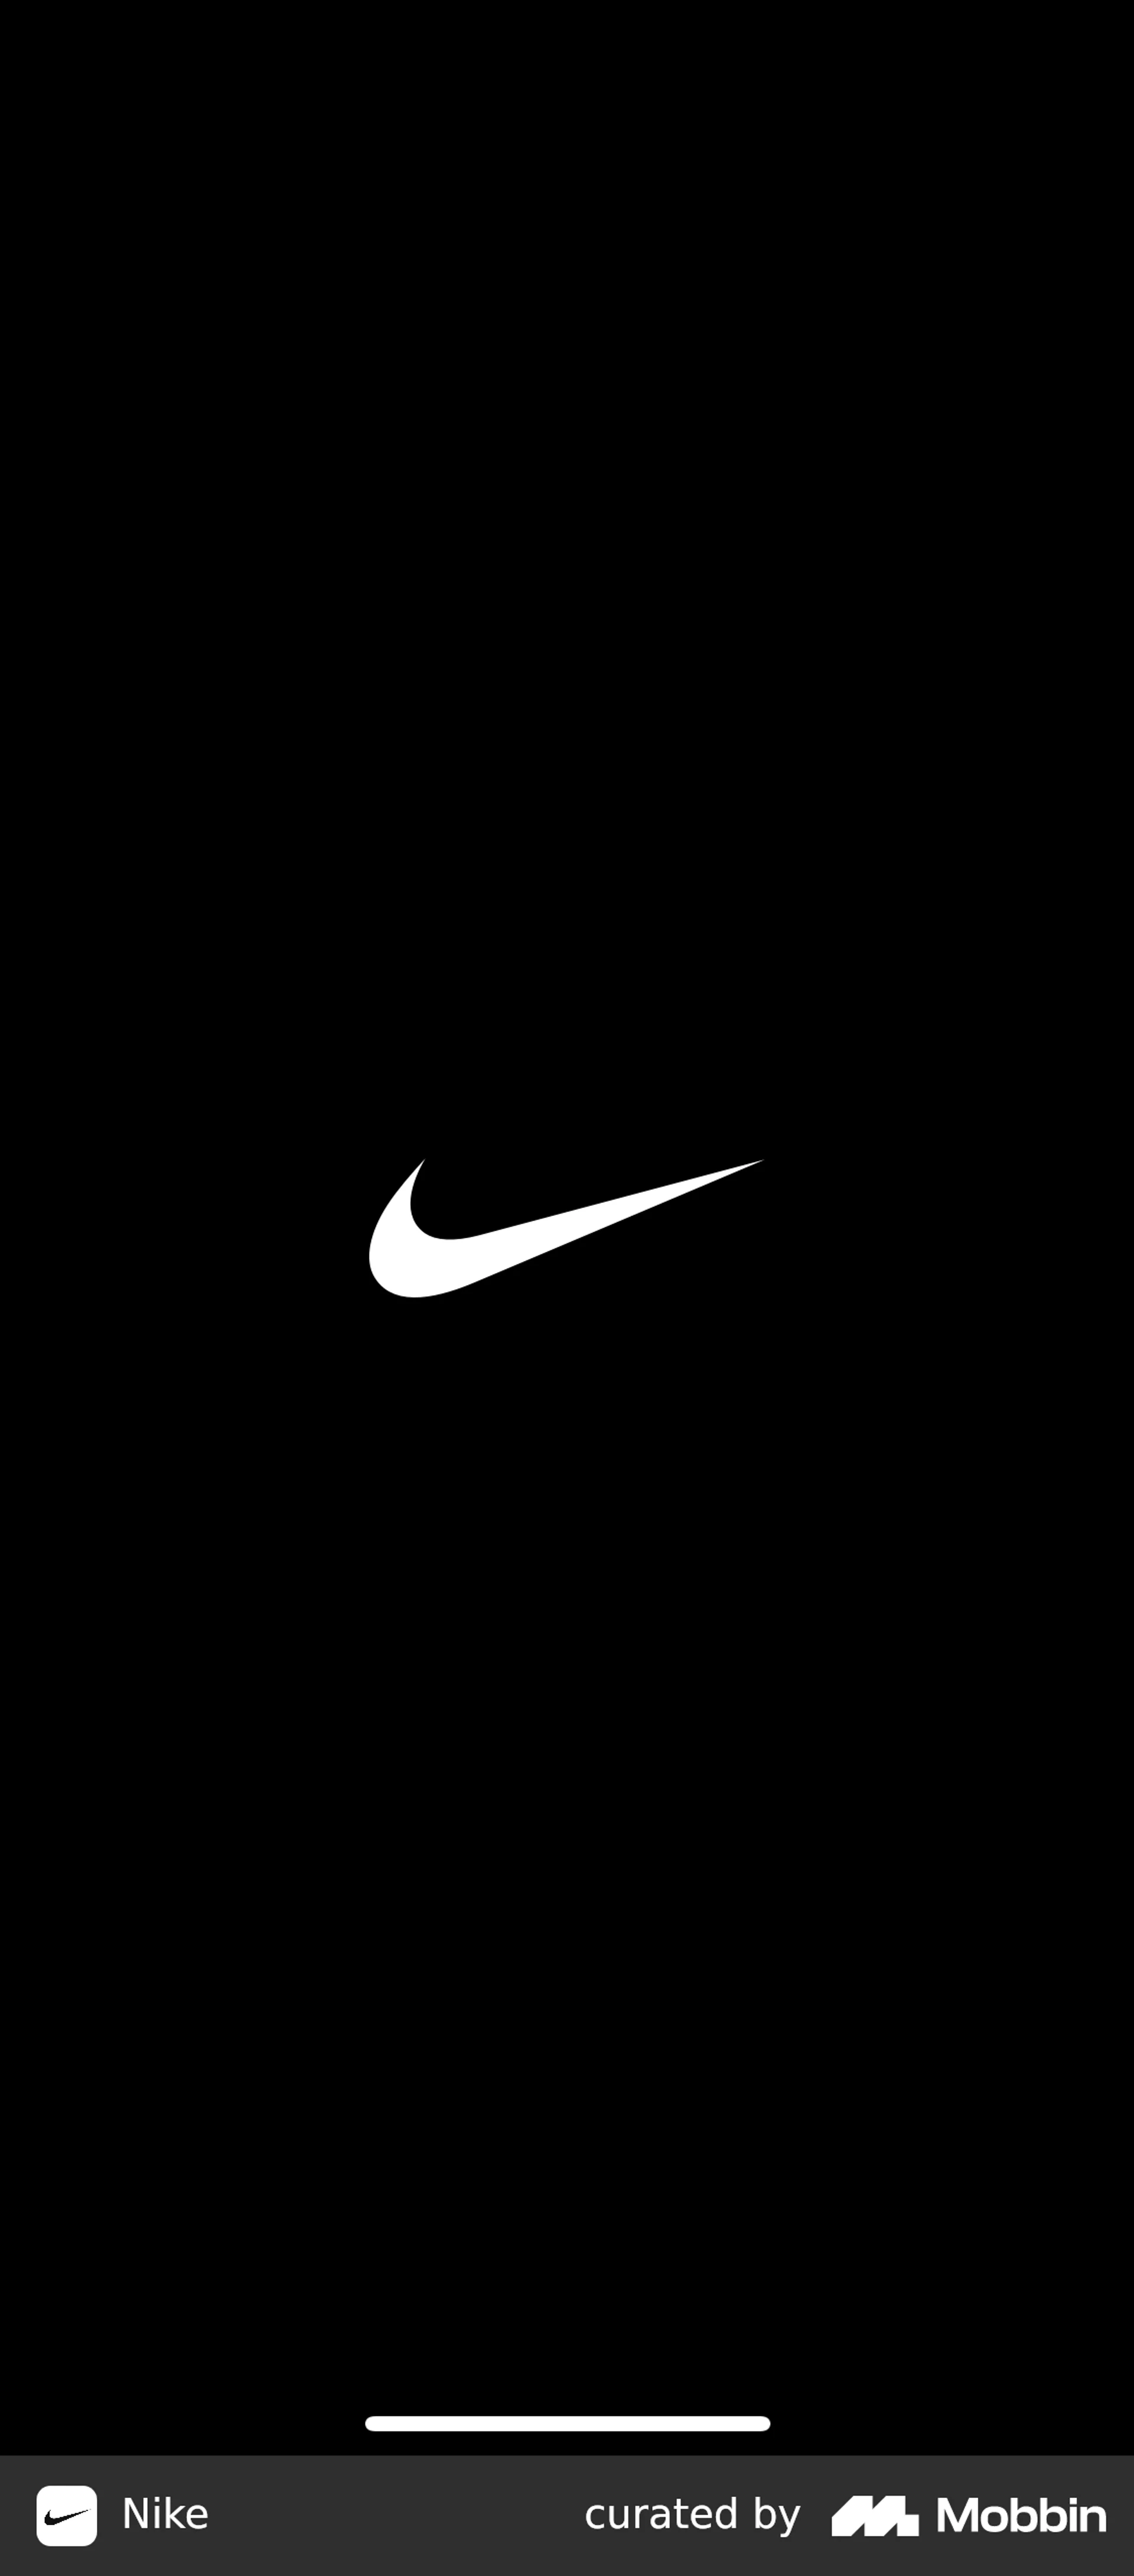 Nike iOS Screen | Mobbin